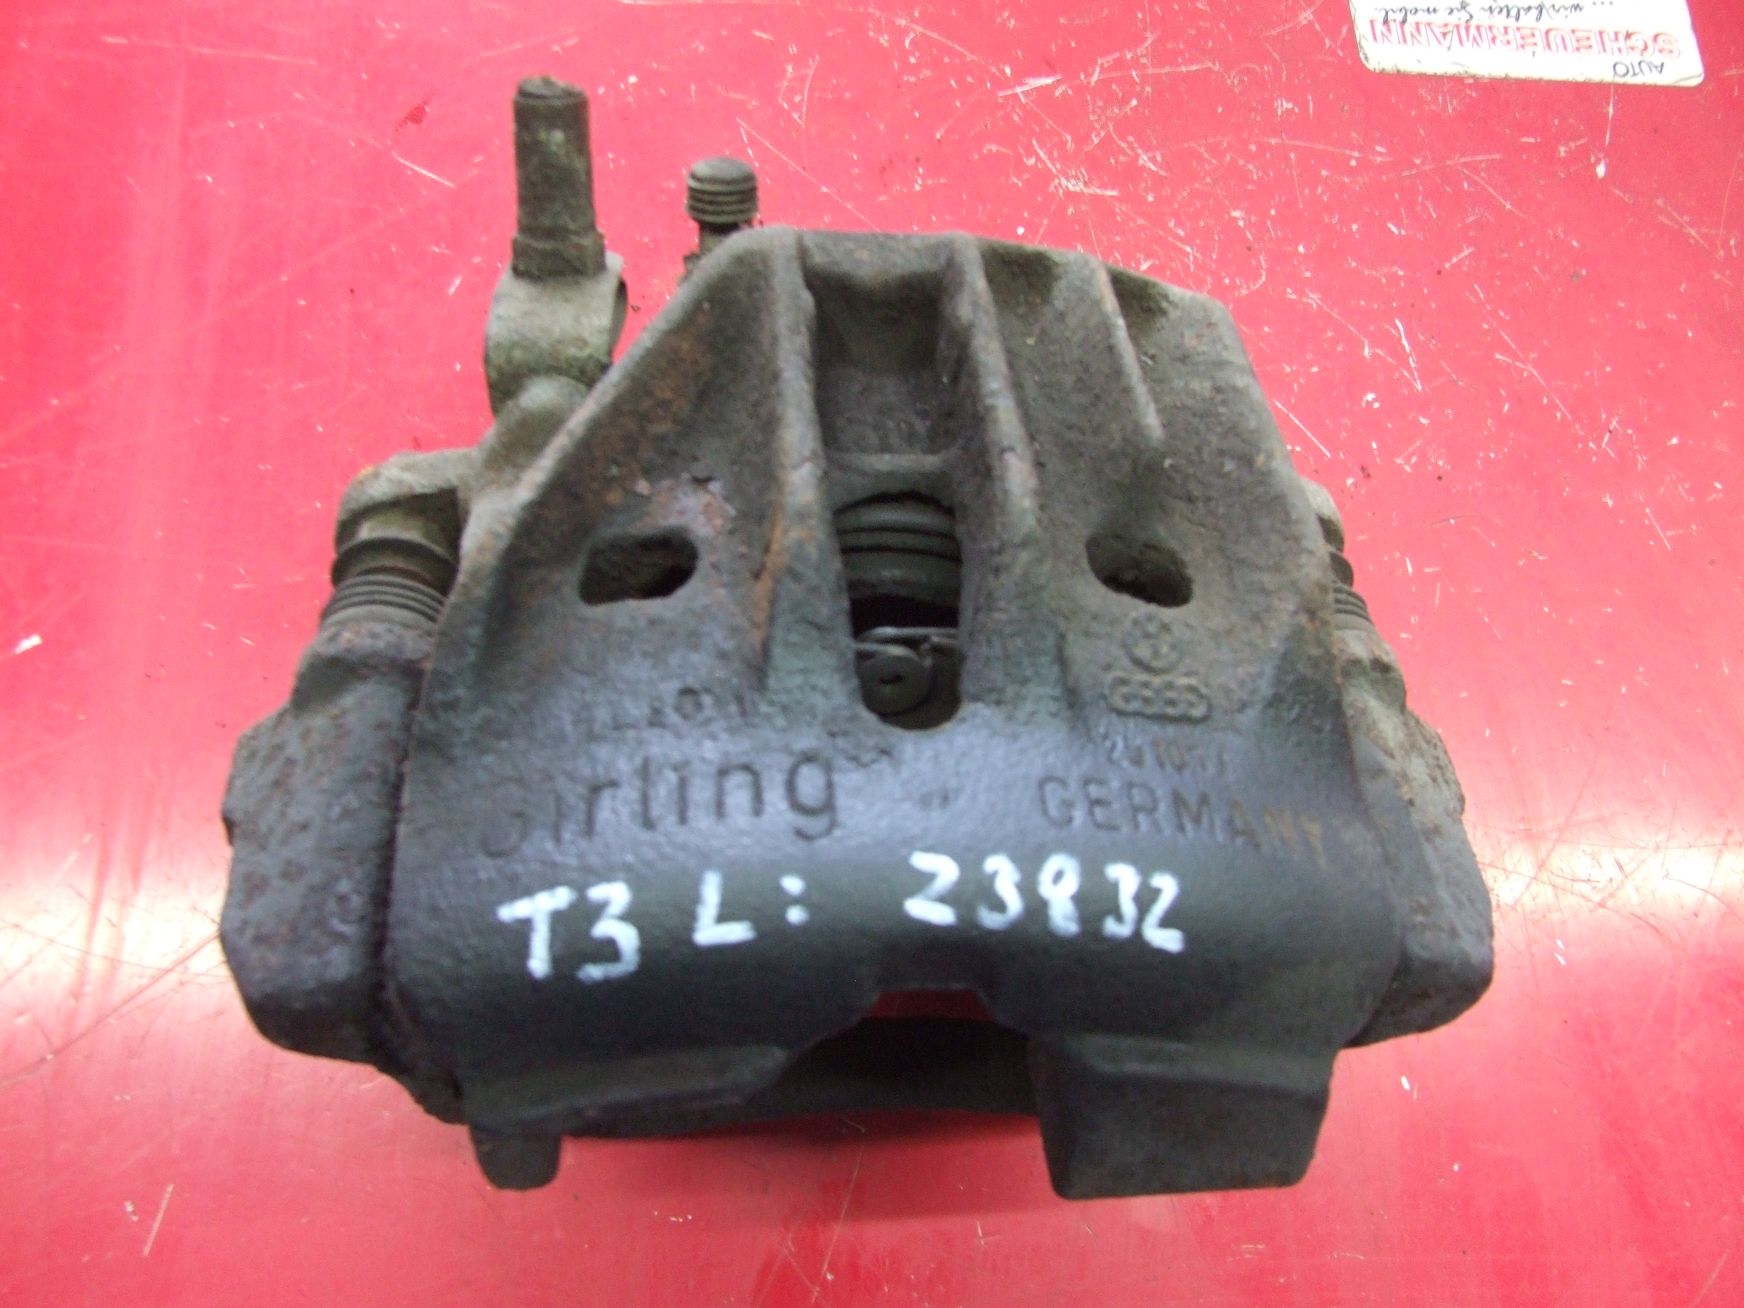 Bremssattel aus VW T3 Girling / 251615123B (gebraucht)